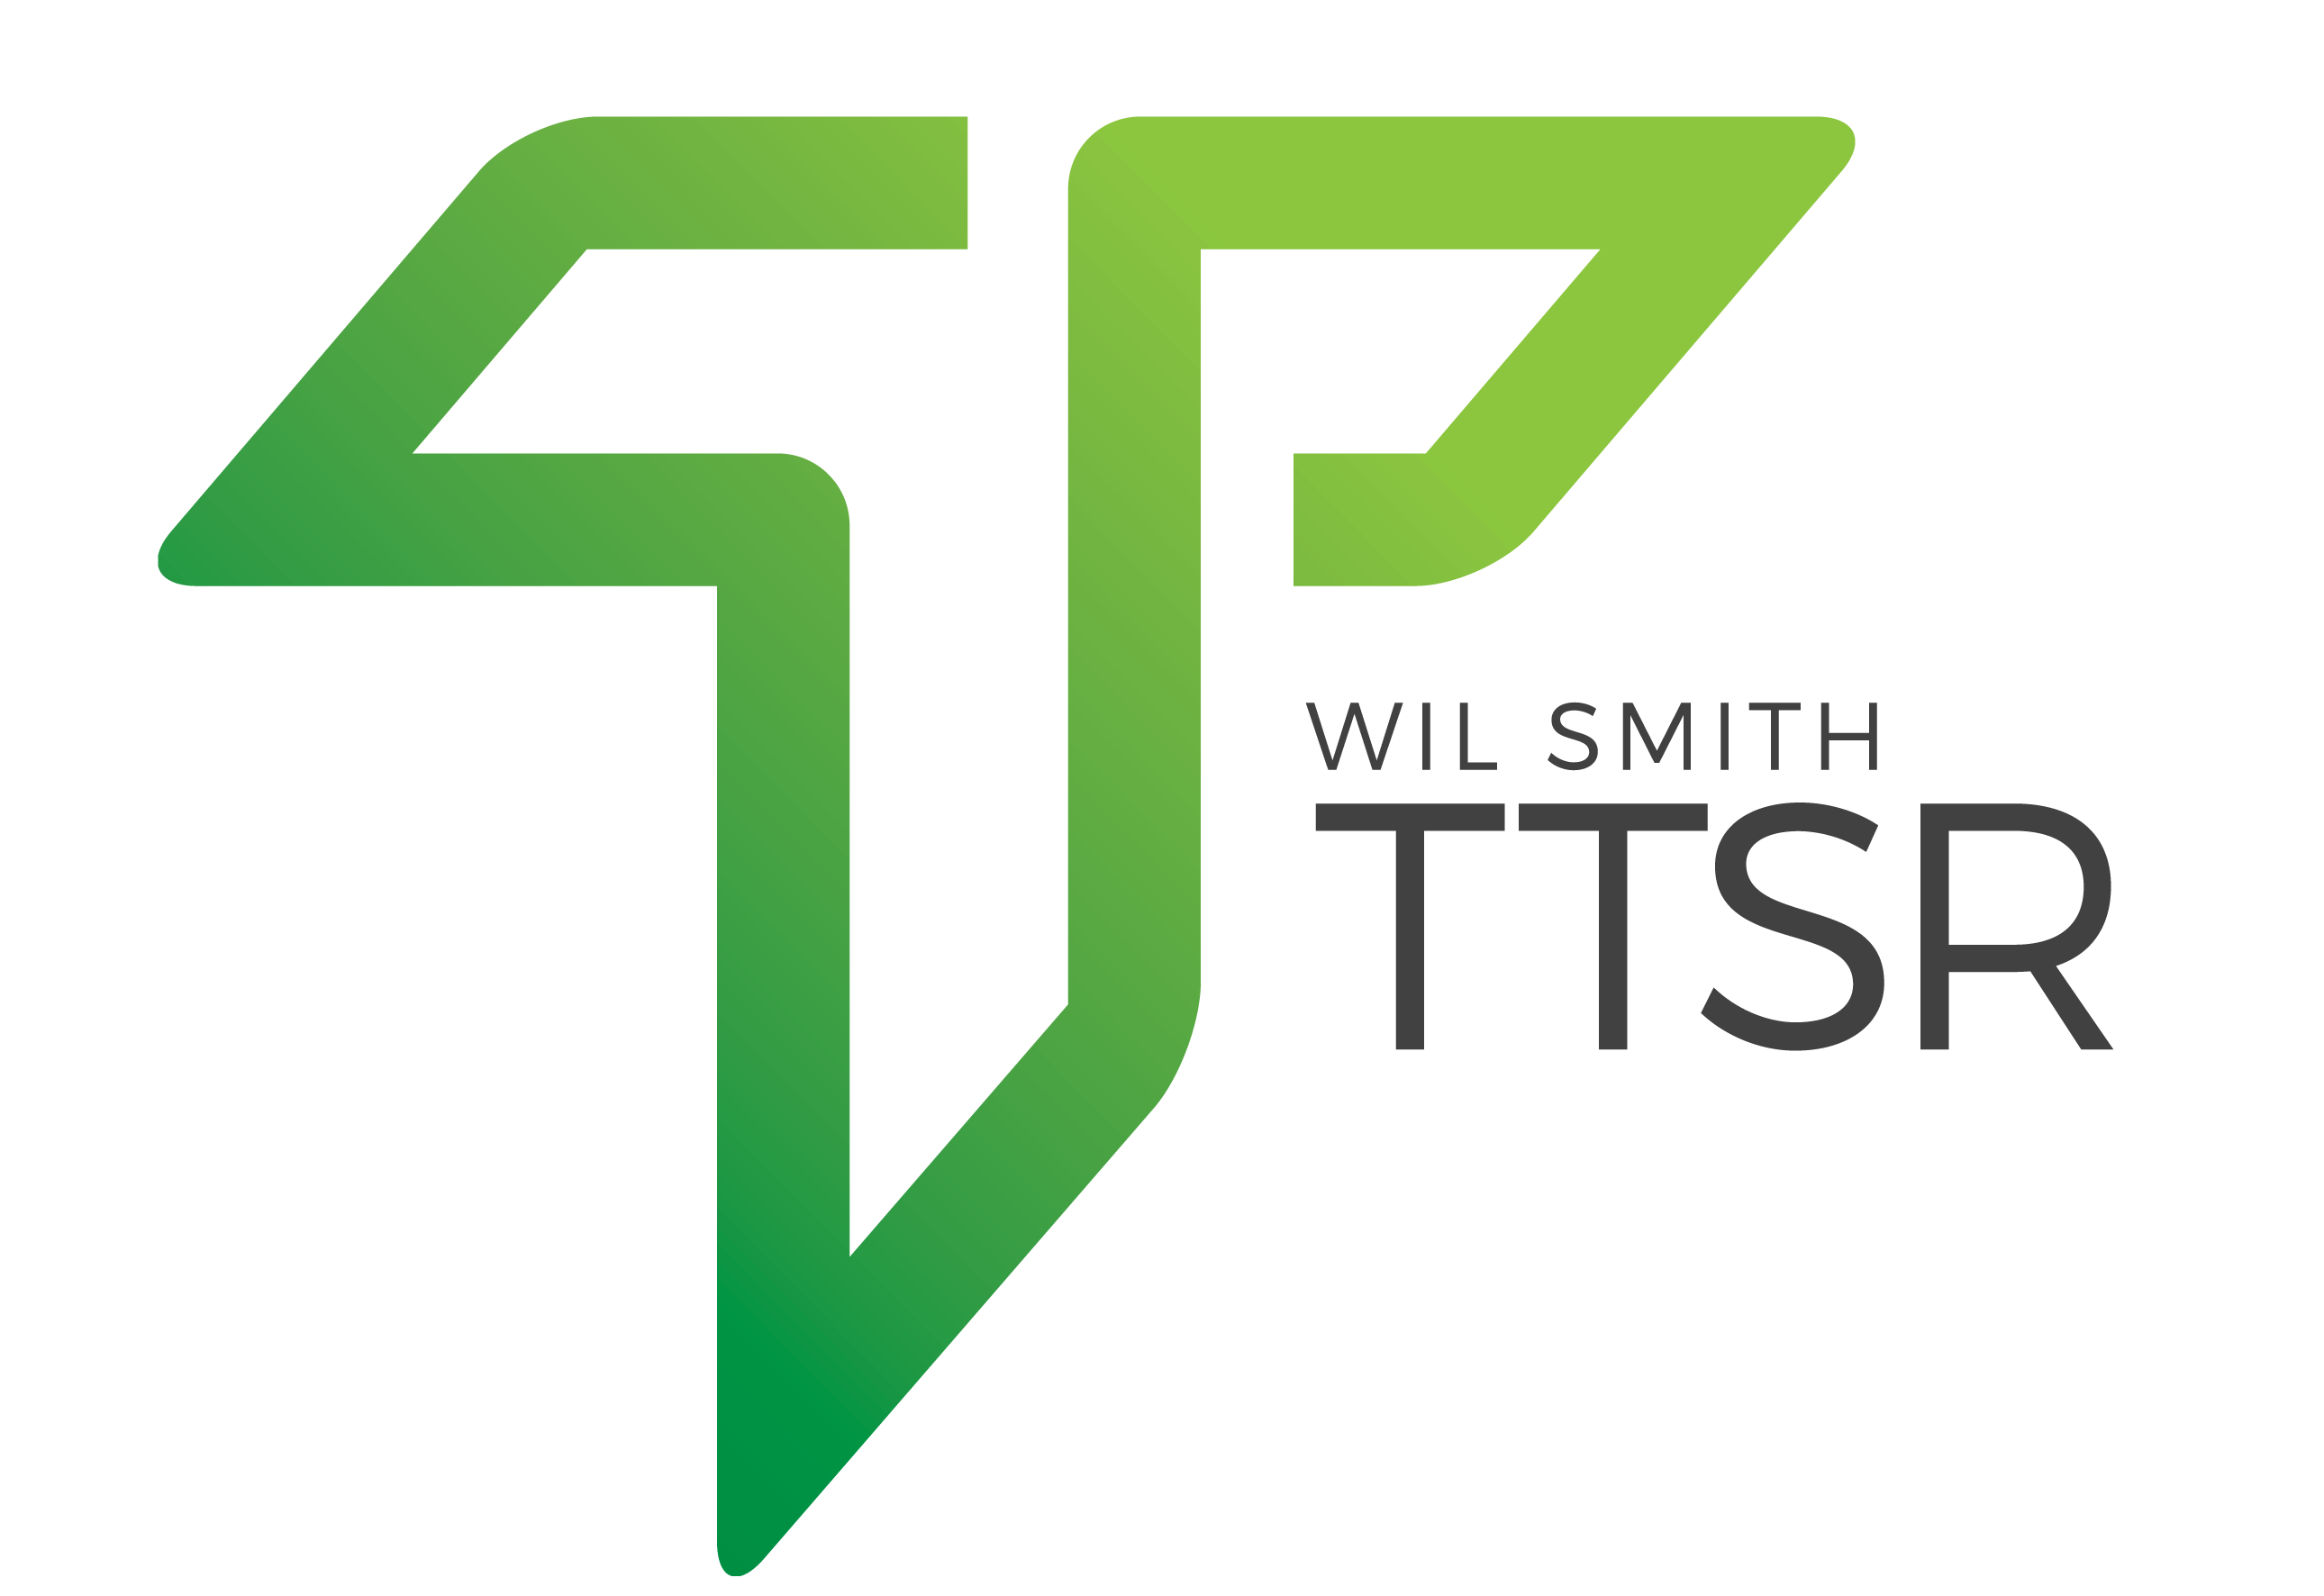 TTSR Ltd